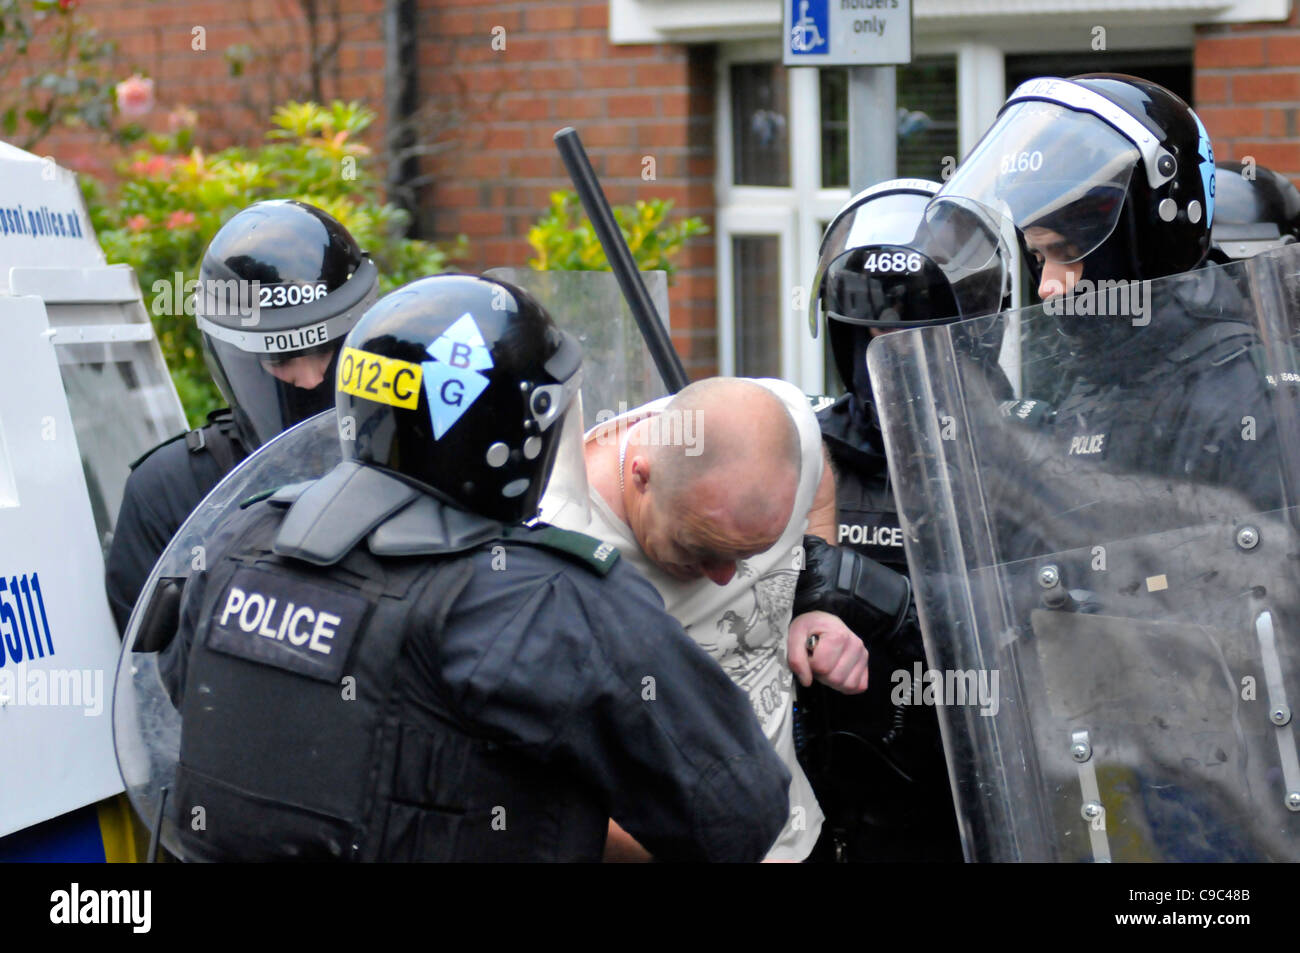 PSNI ufficiali arrestato un uomo nel corso di disordini nel Bogside, Londonderry, Irlanda del Nord. Foto Stock